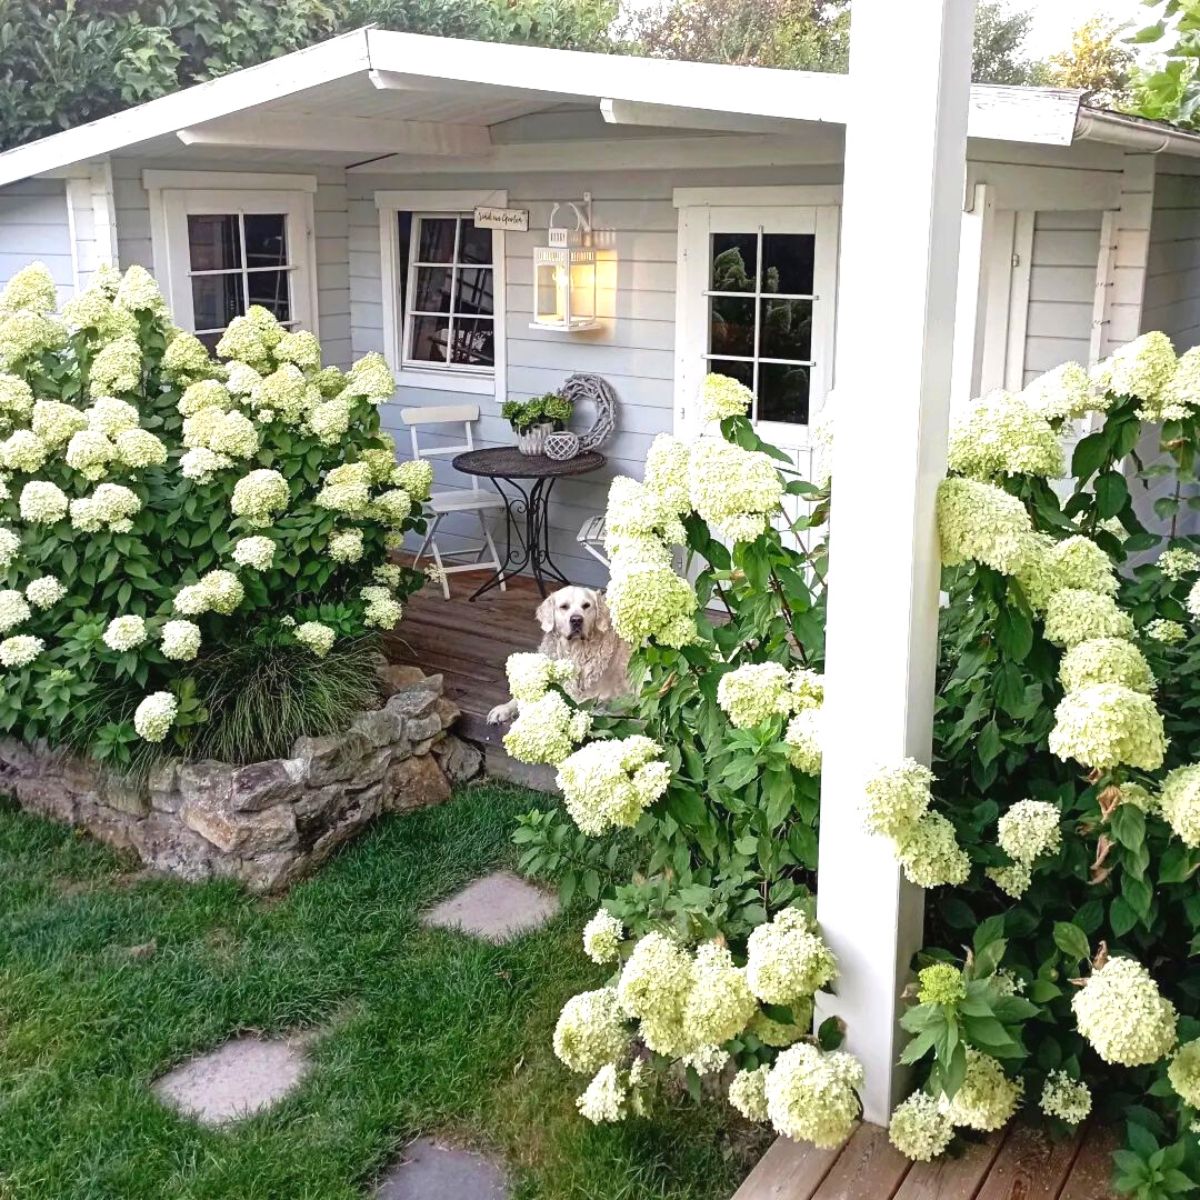 A white hydrangea garden